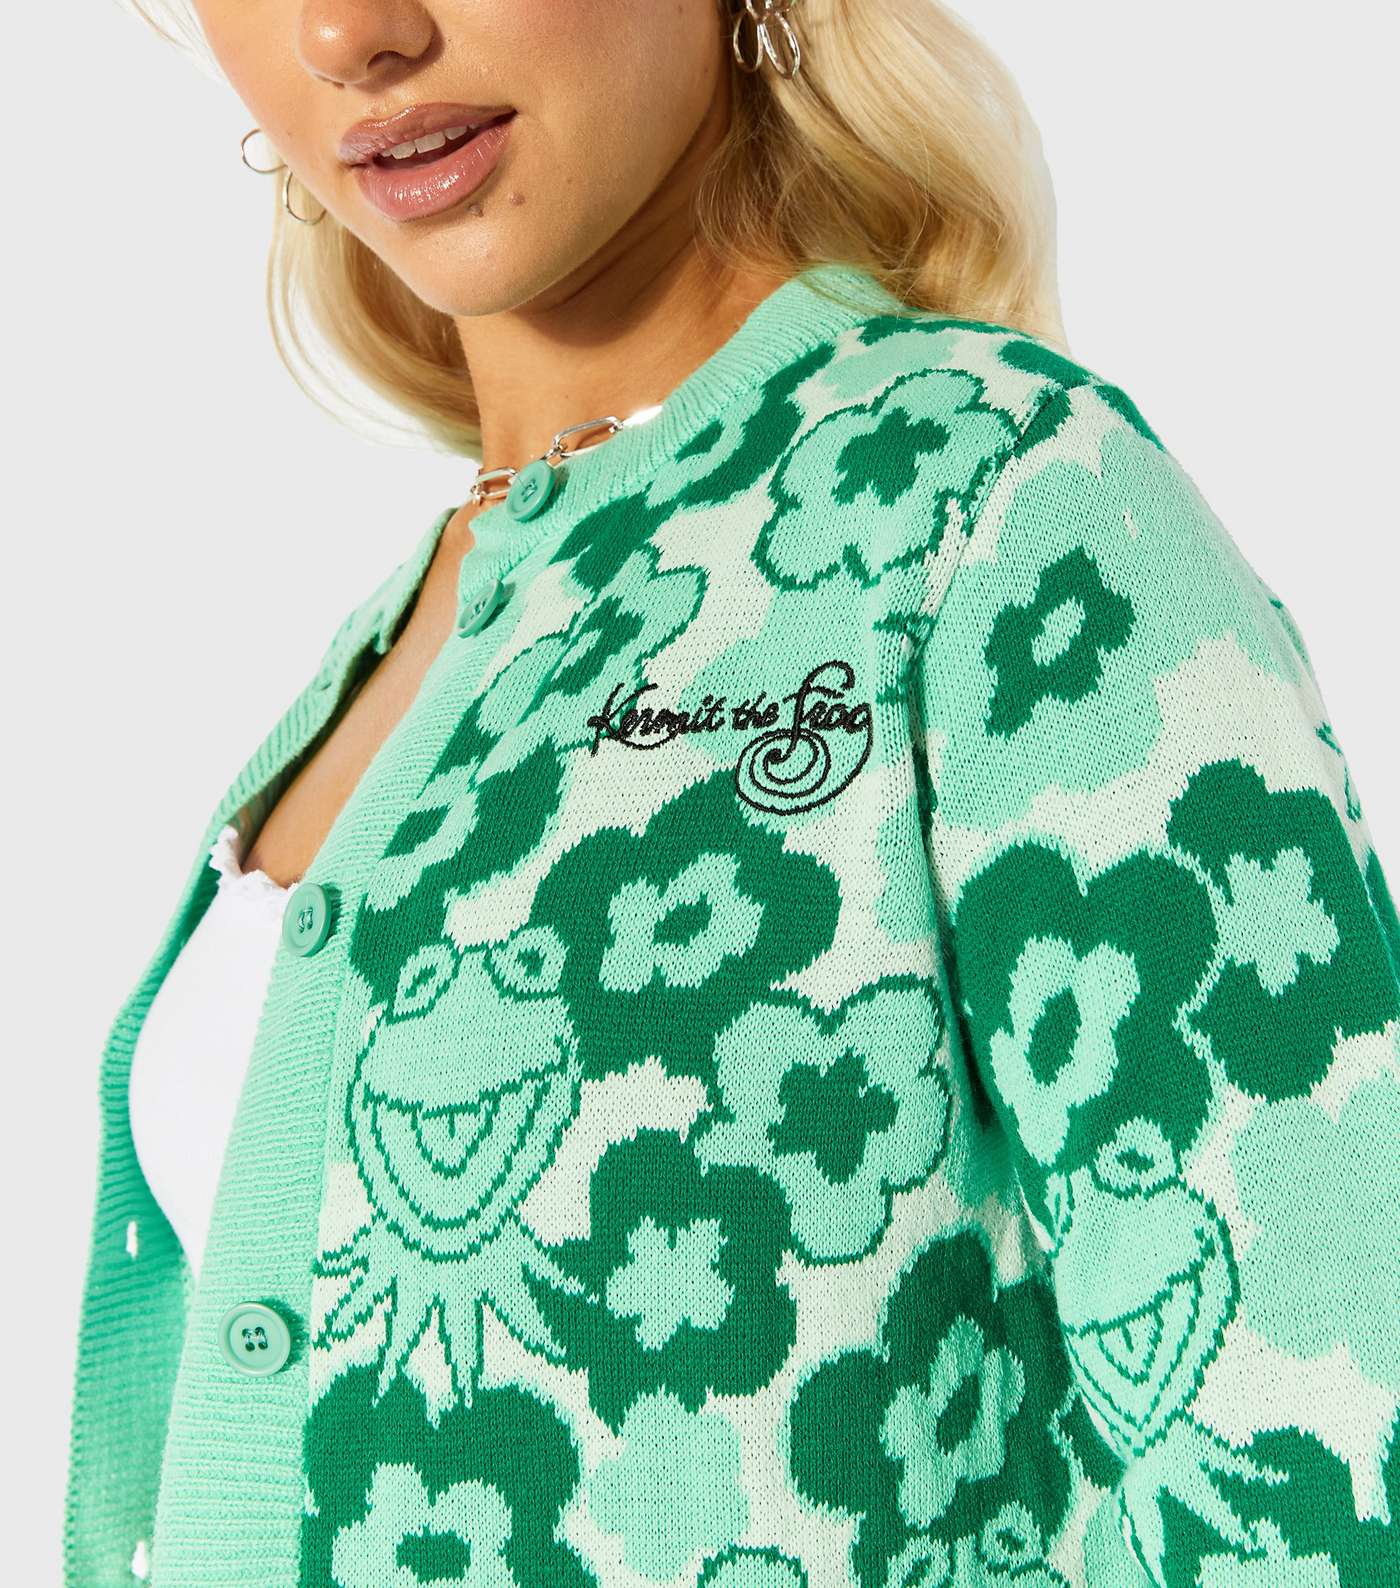 Skinnydip Green Disney Kermit Jacquard Knit Cardigan Image 3